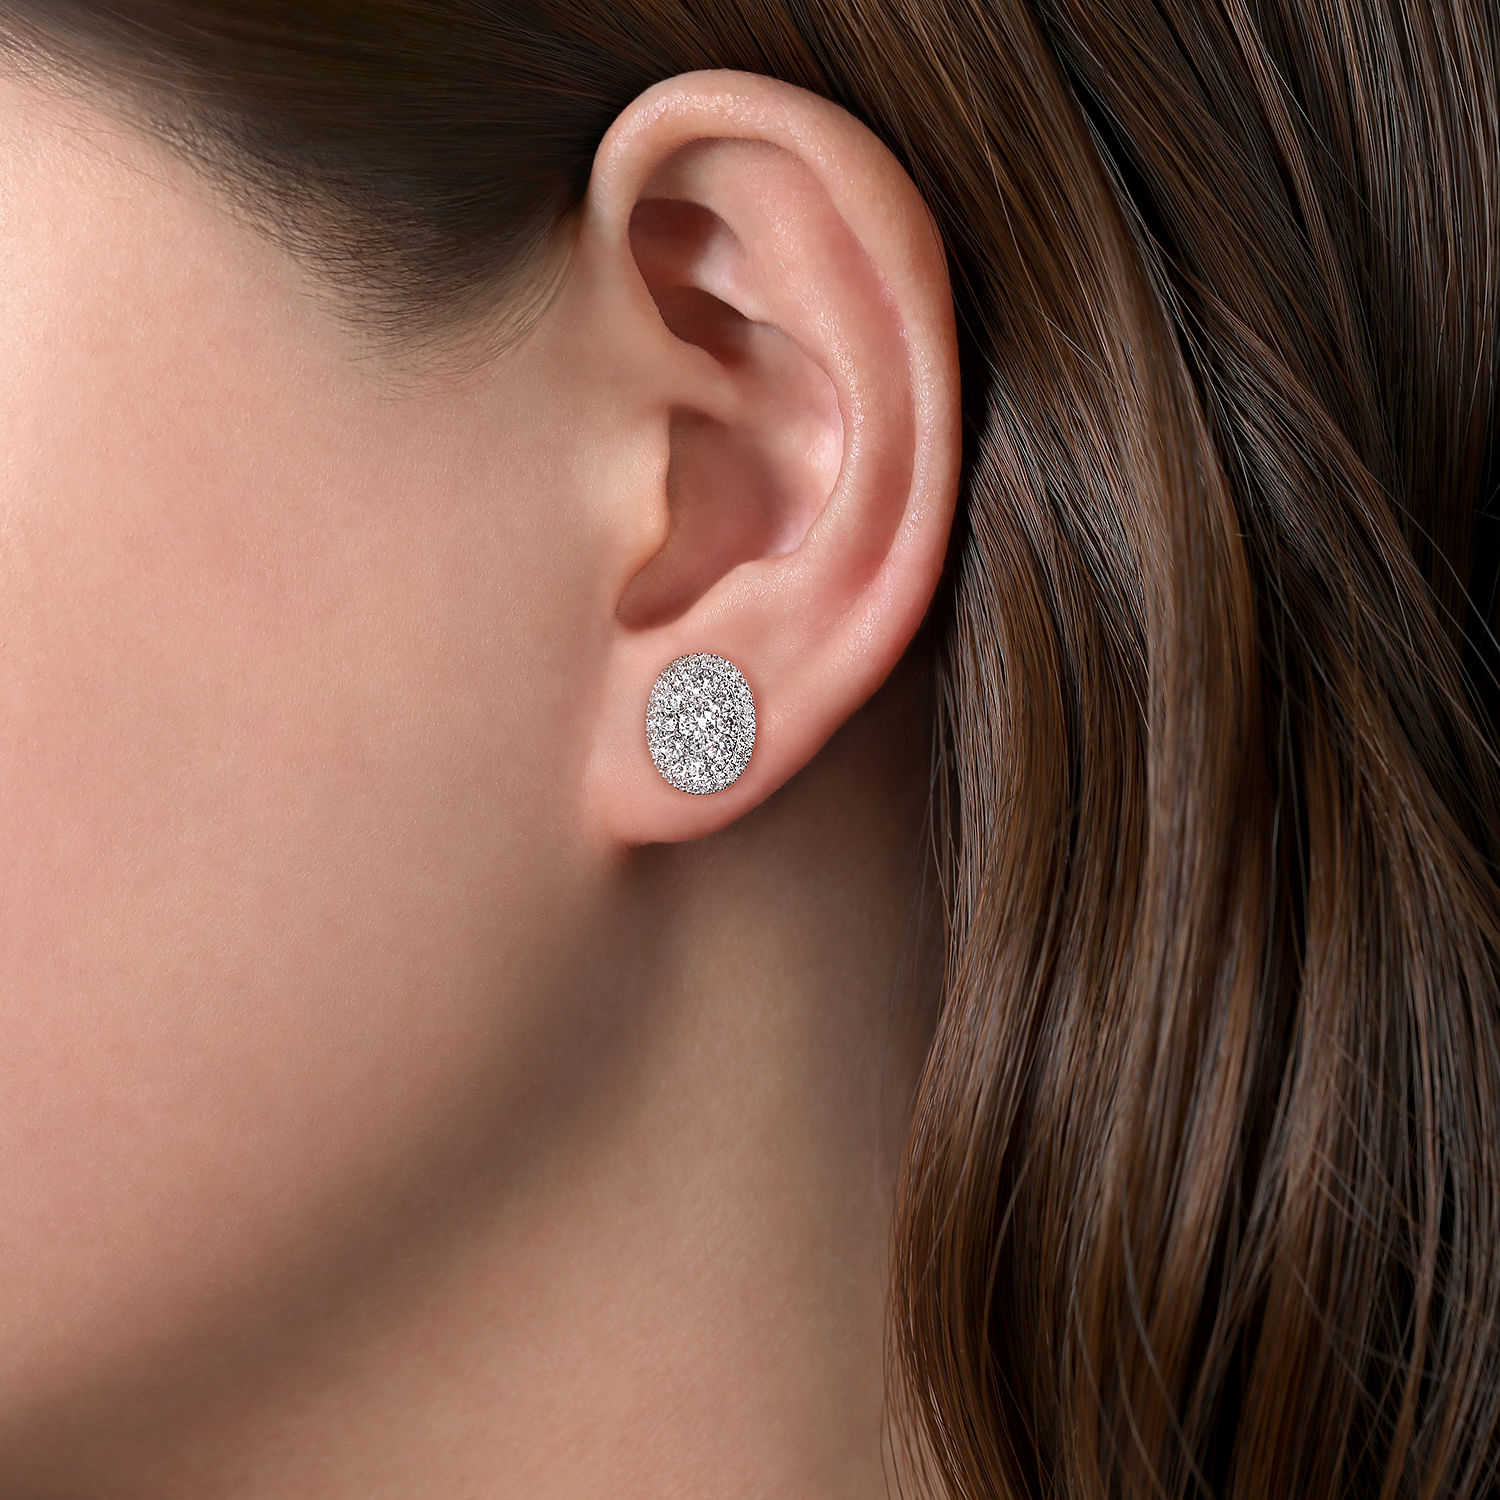 14K White Gold Round Cluster Diamond Stud Earrings